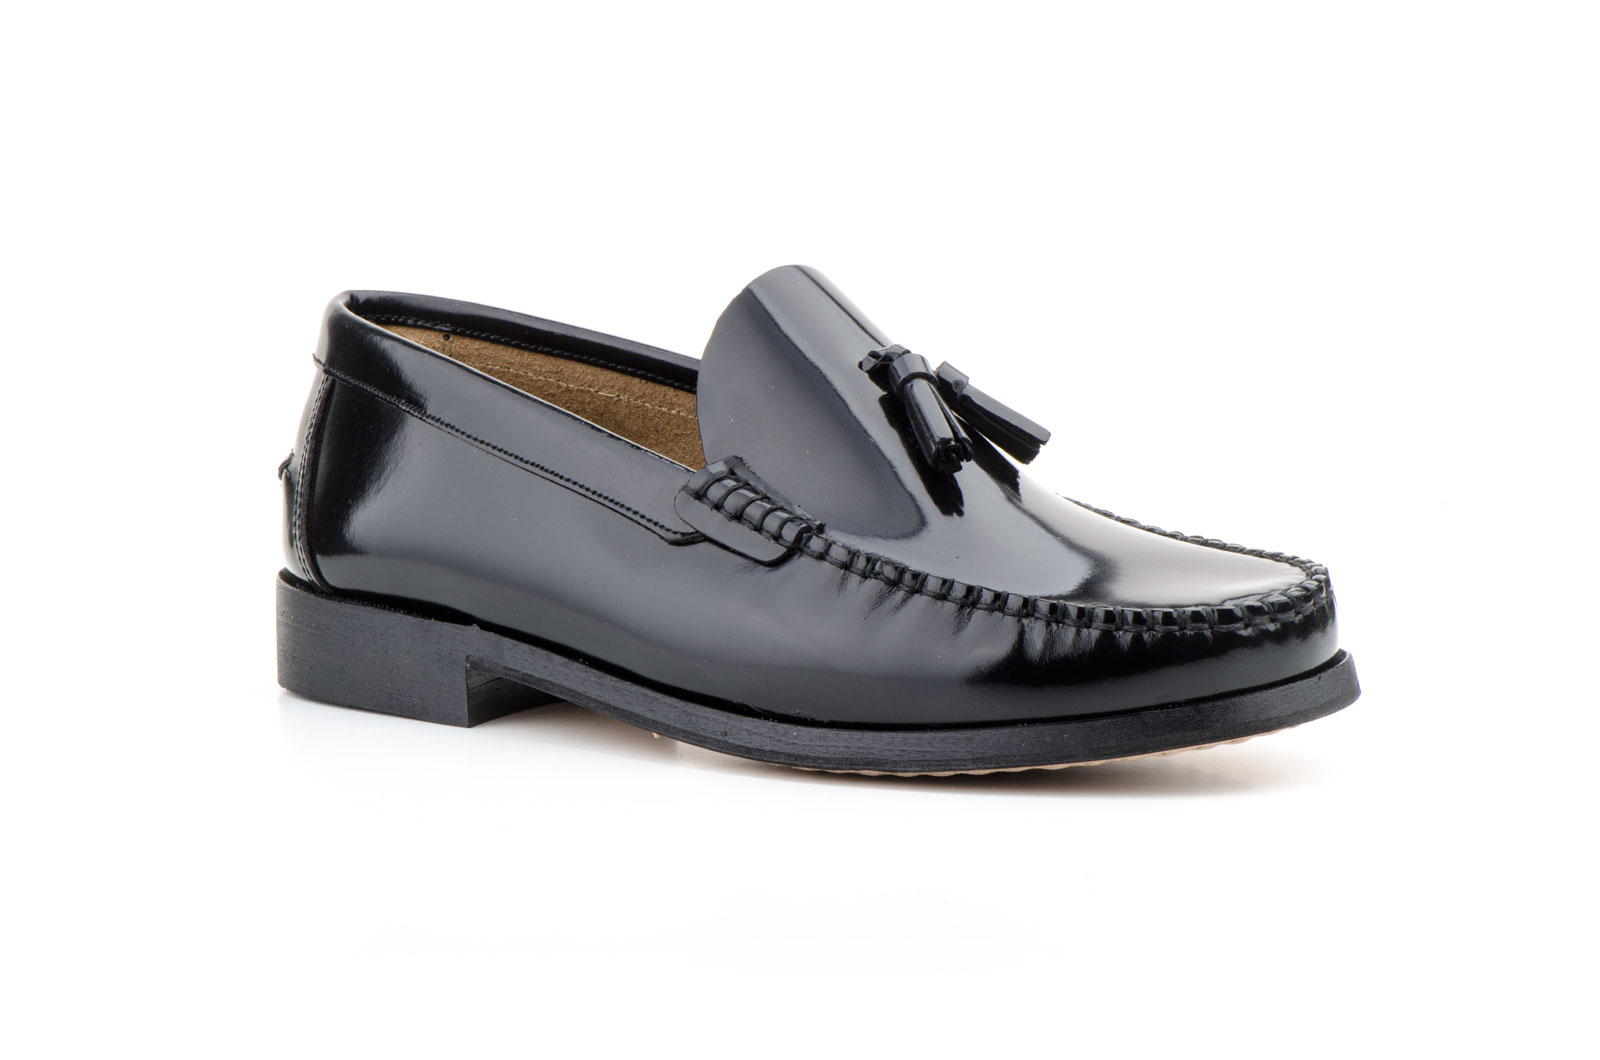 Zapatos Hombre Piel Negro Suela de Cuero Castellanos  -  Ref. 1004 Negro